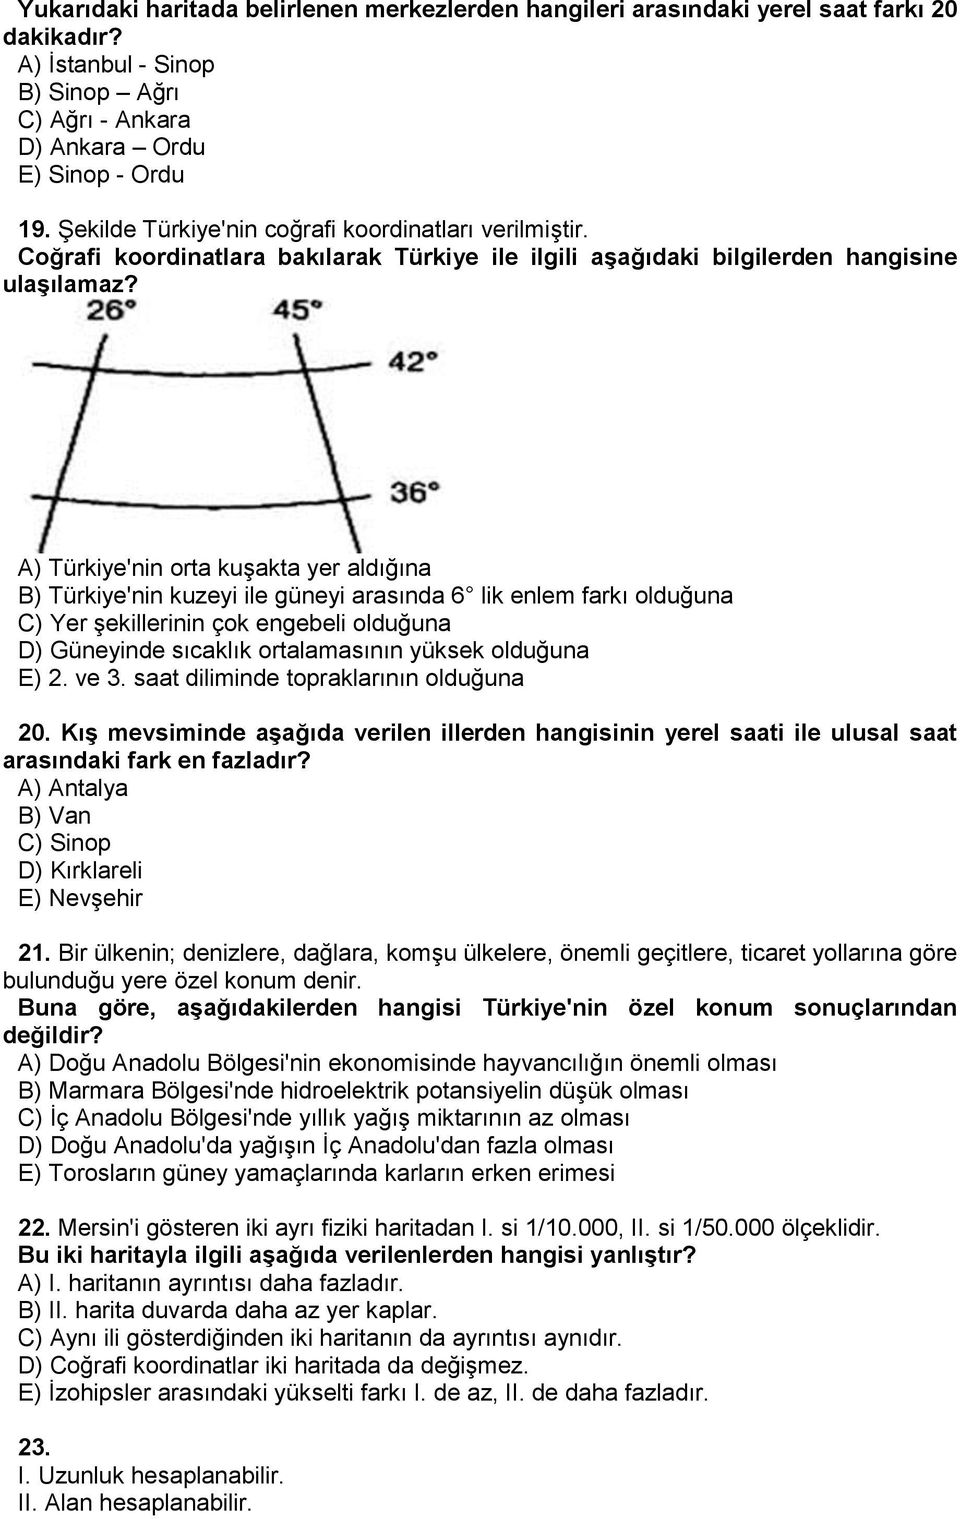 A) Türkiye'nin orta kuşakta yer aldığına B) Türkiye'nin kuzeyi ile güneyi arasında 6 lik enlem farkı olduğuna C) Yer şekillerinin çok engebeli olduğuna D) Güneyinde sıcaklık ortalamasının yüksek